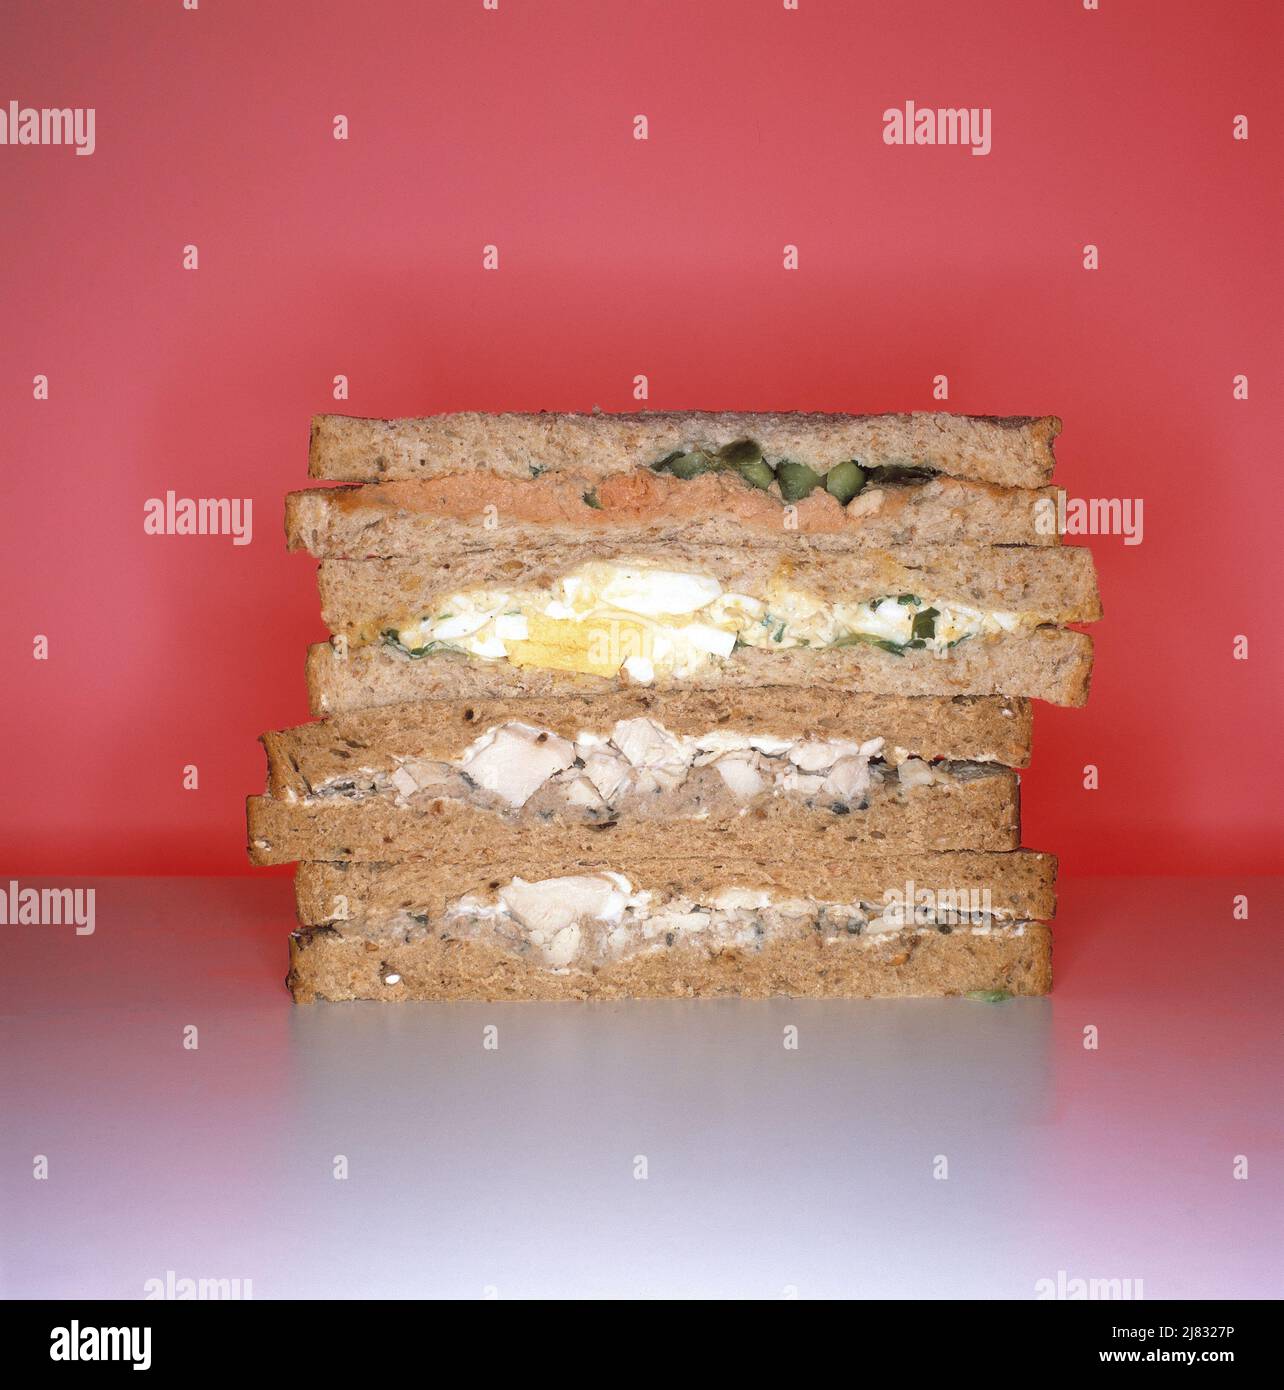 Sándwiches hechos en el supermercado Foto de stock